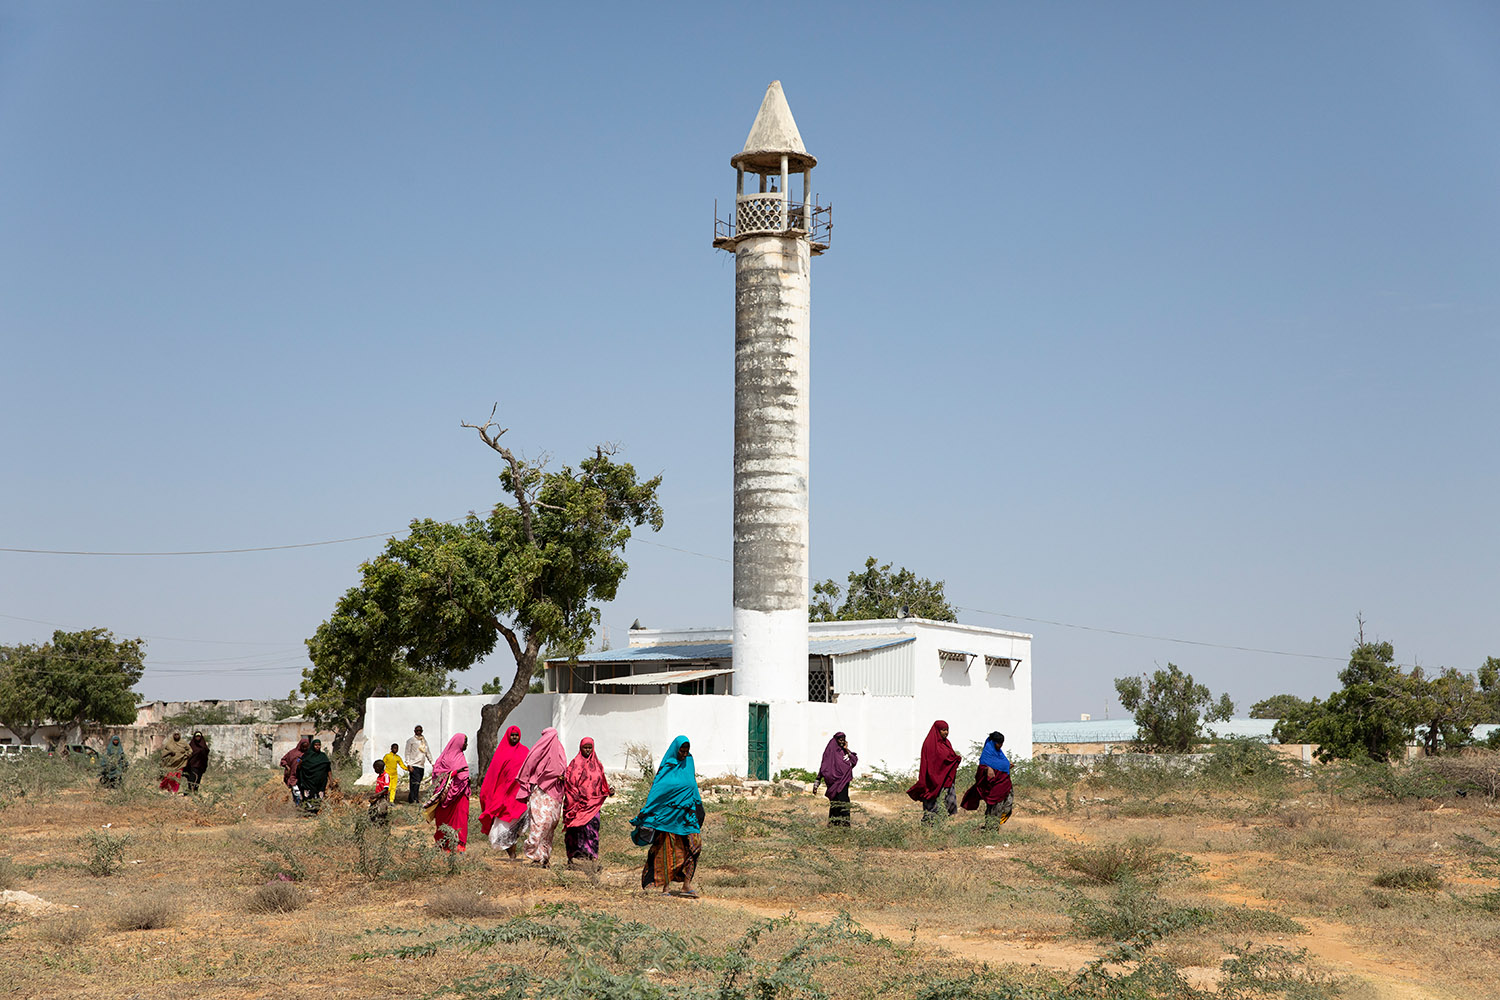 Des femmes portent des abayas multicolores sur une terrain vague près d'un minaret.